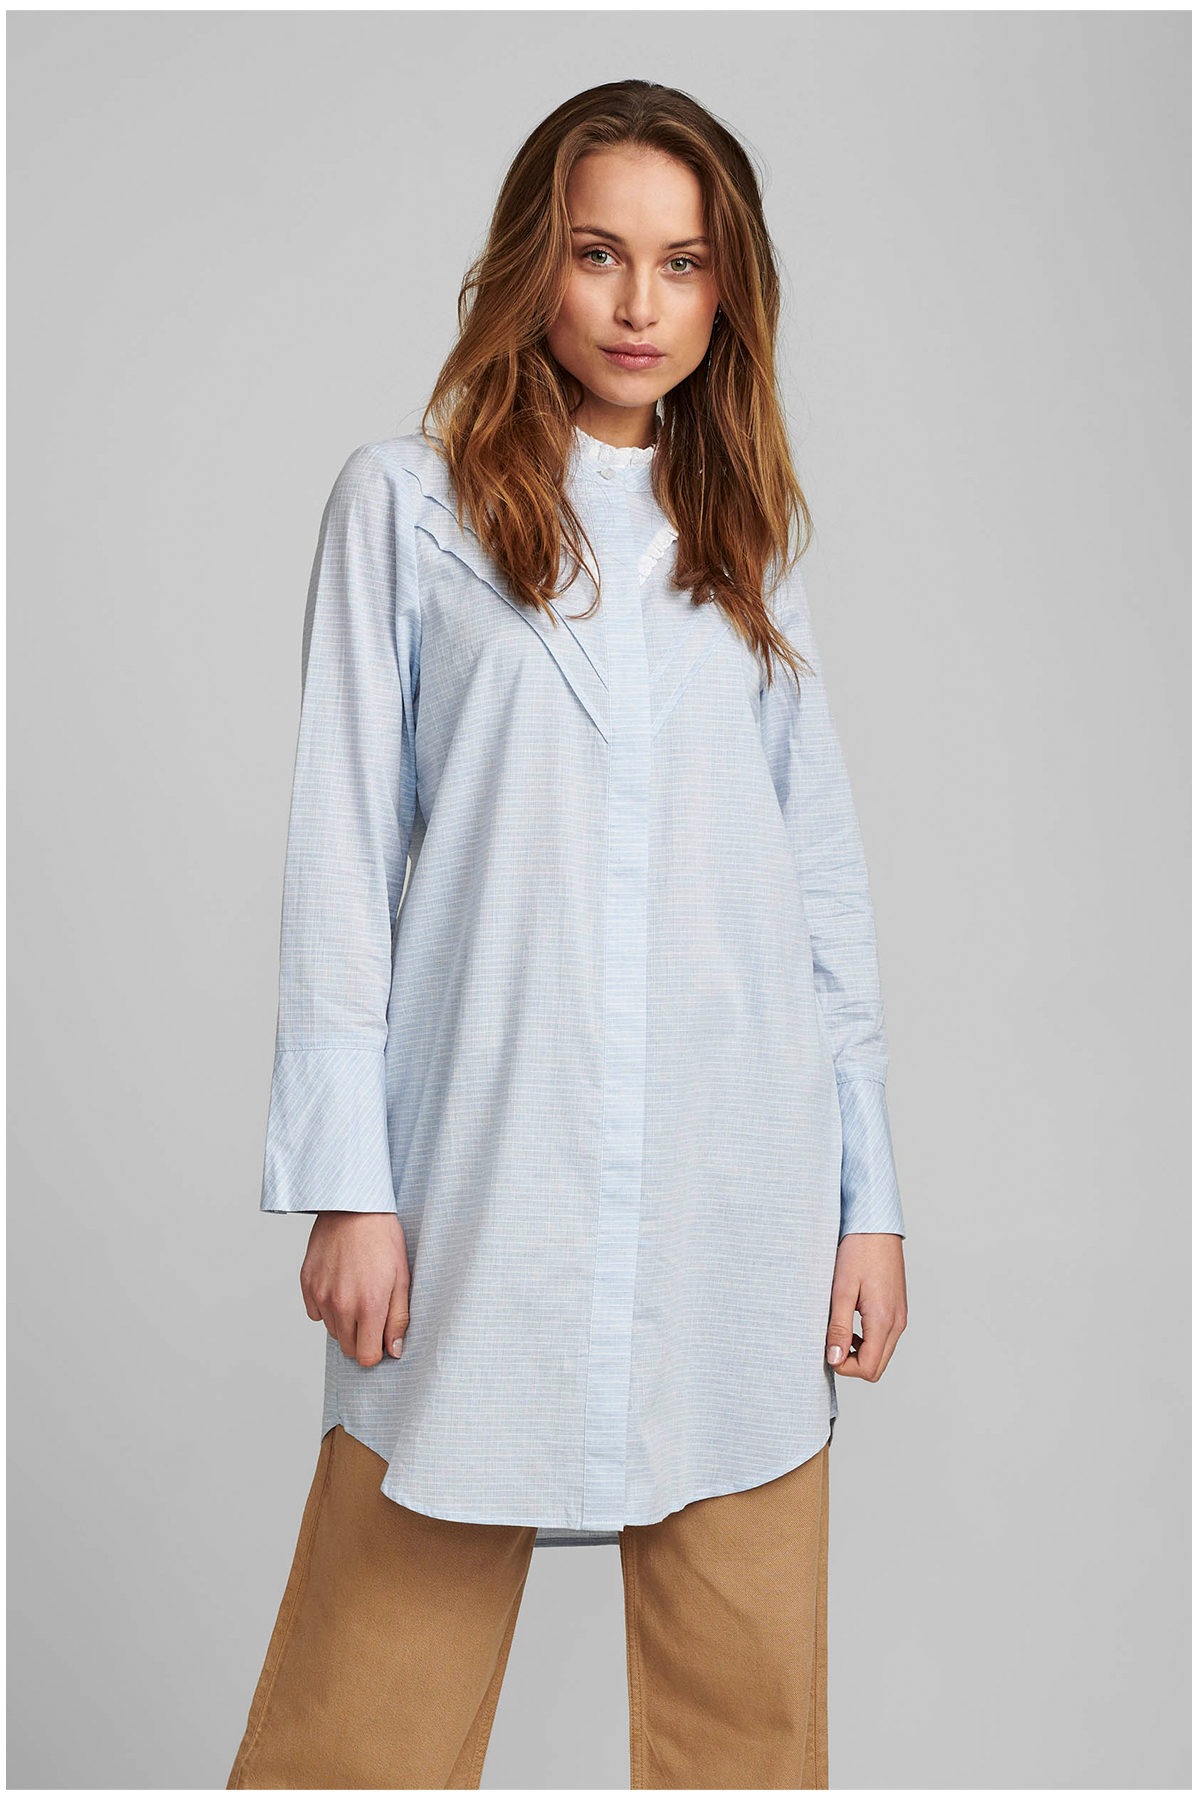 Nümph Celie Long Skjorte, Farve: Blå, Størrelse: 38, Dame